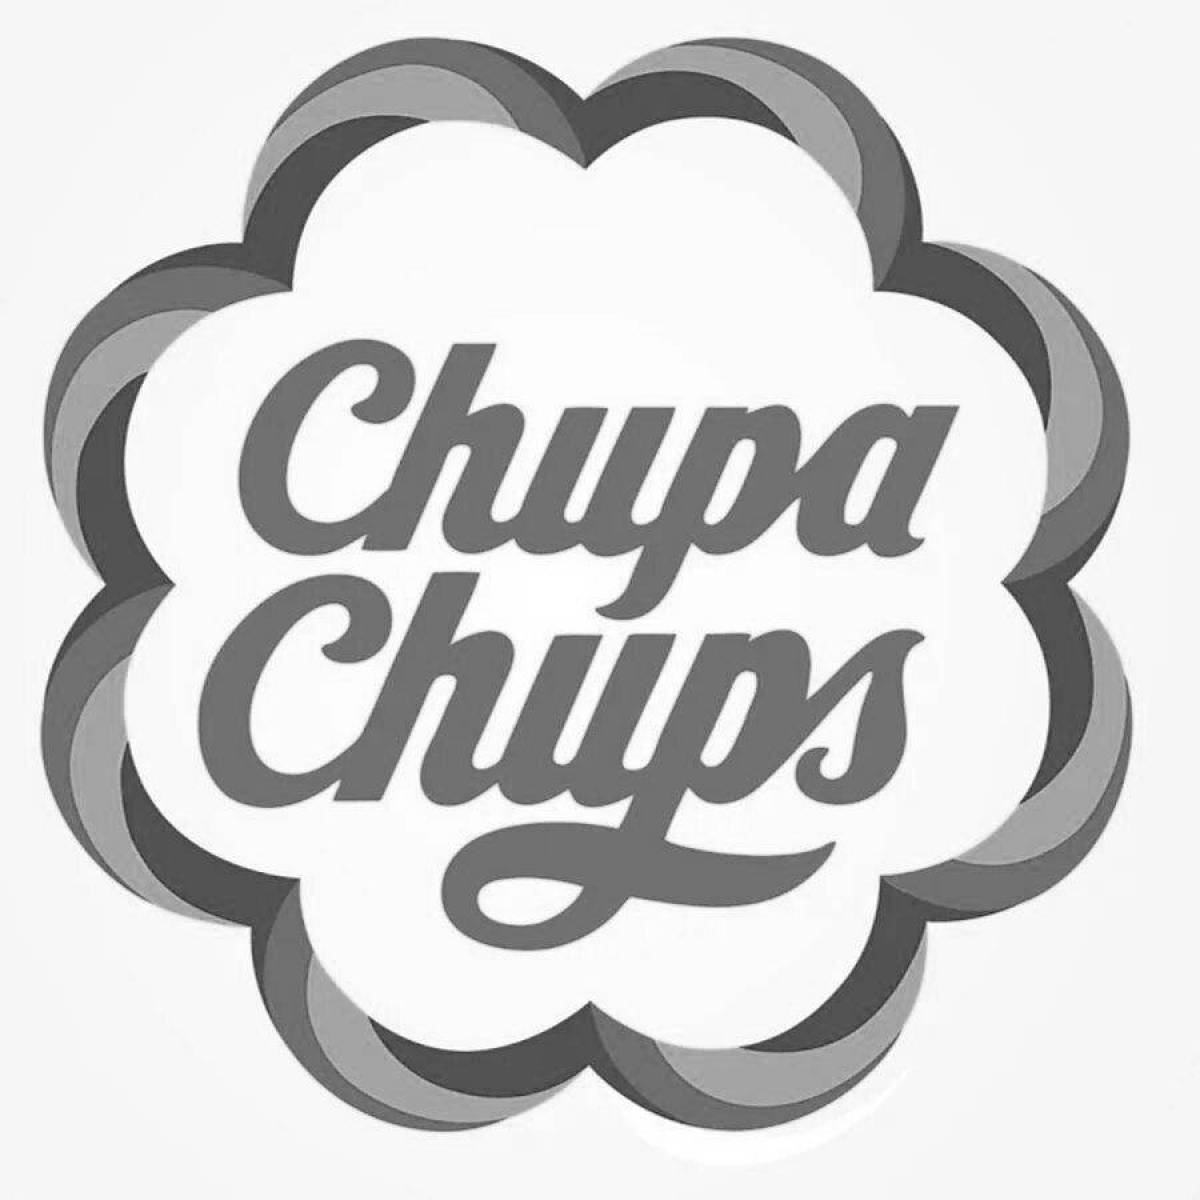 Dazzling chupa chups logo coloring page